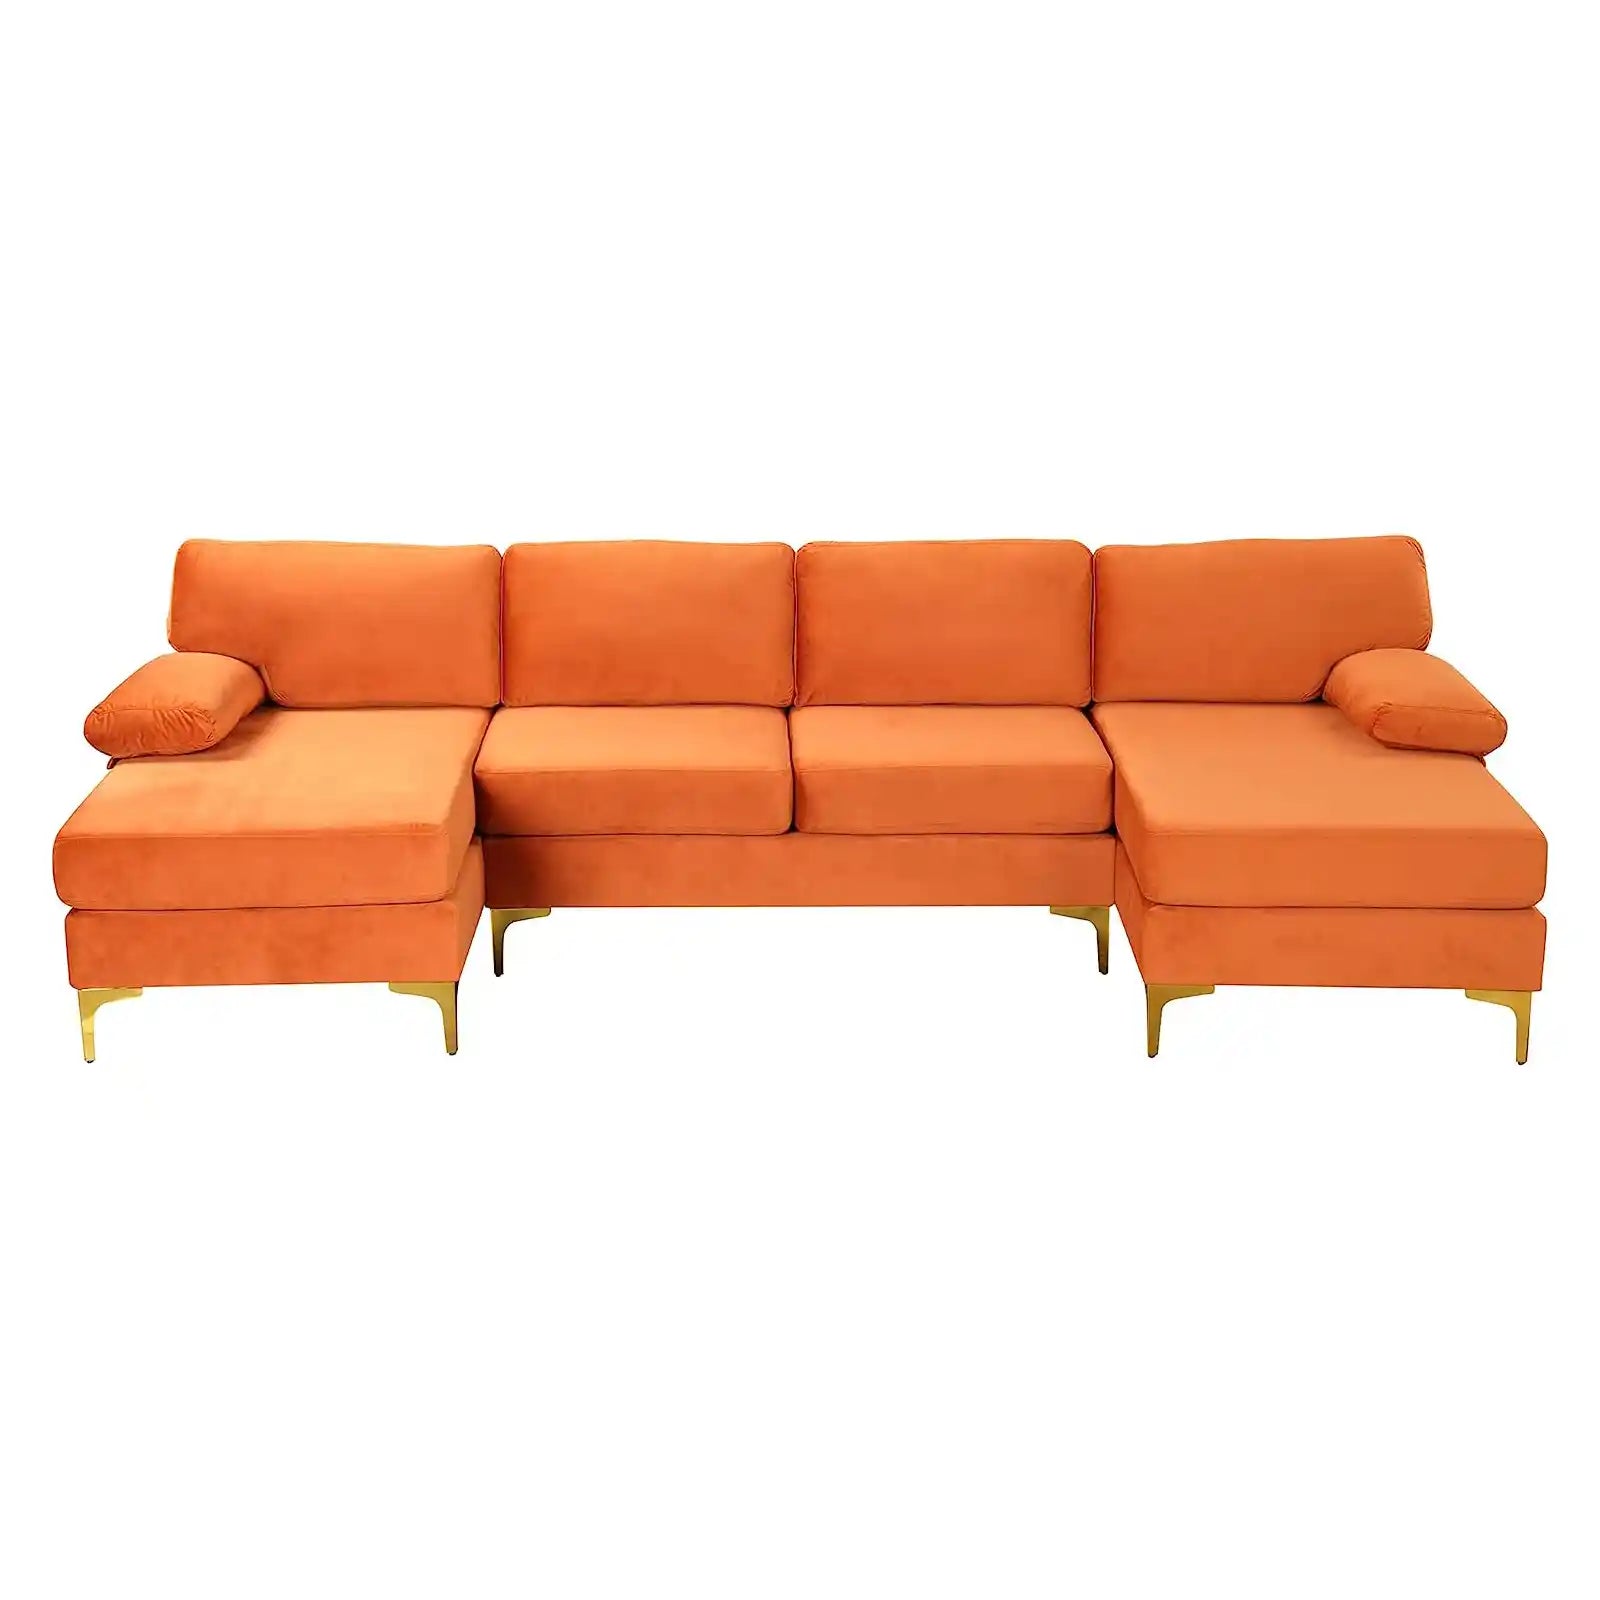 Sofá seccional grande moderno de tela de terciopelo en forma de U, sofá chaise lounge doble extra ancho con patas doradas 